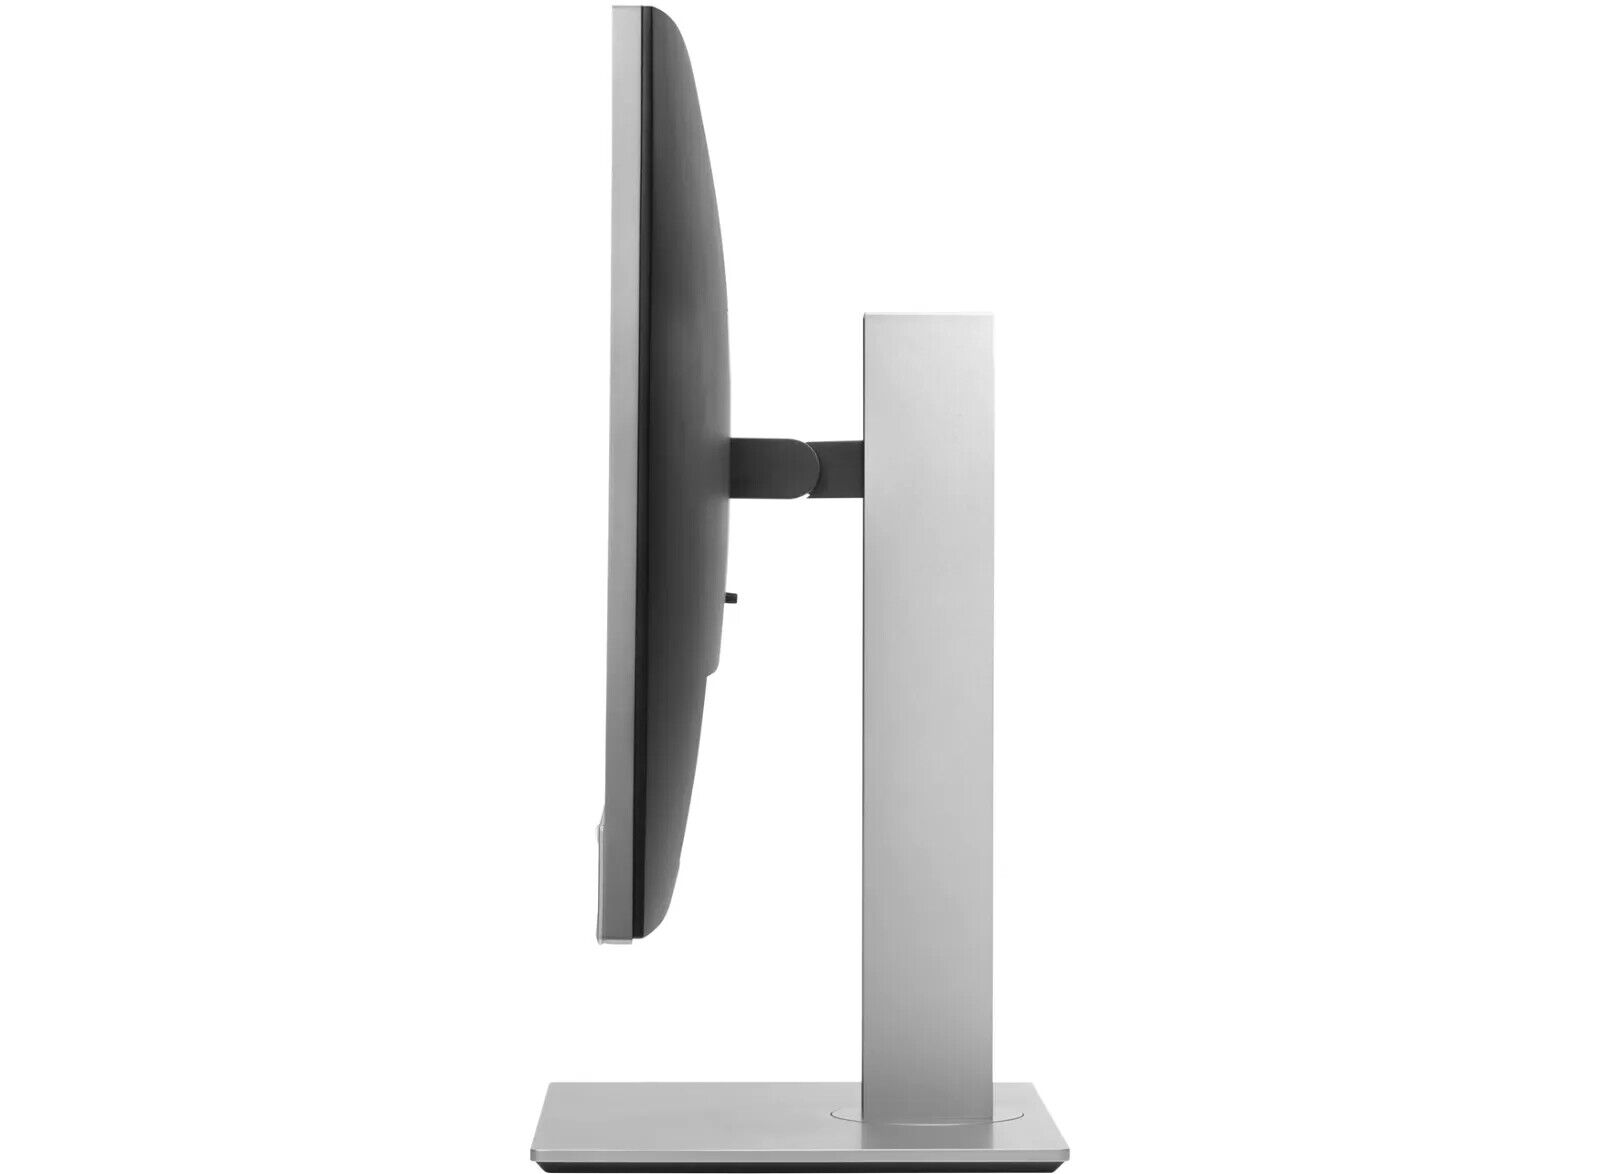 HP-EliteDisplay-E243m-238-IPS-LED-Monitor-with-Pop-up-Webcam-Audio-165345694697-5